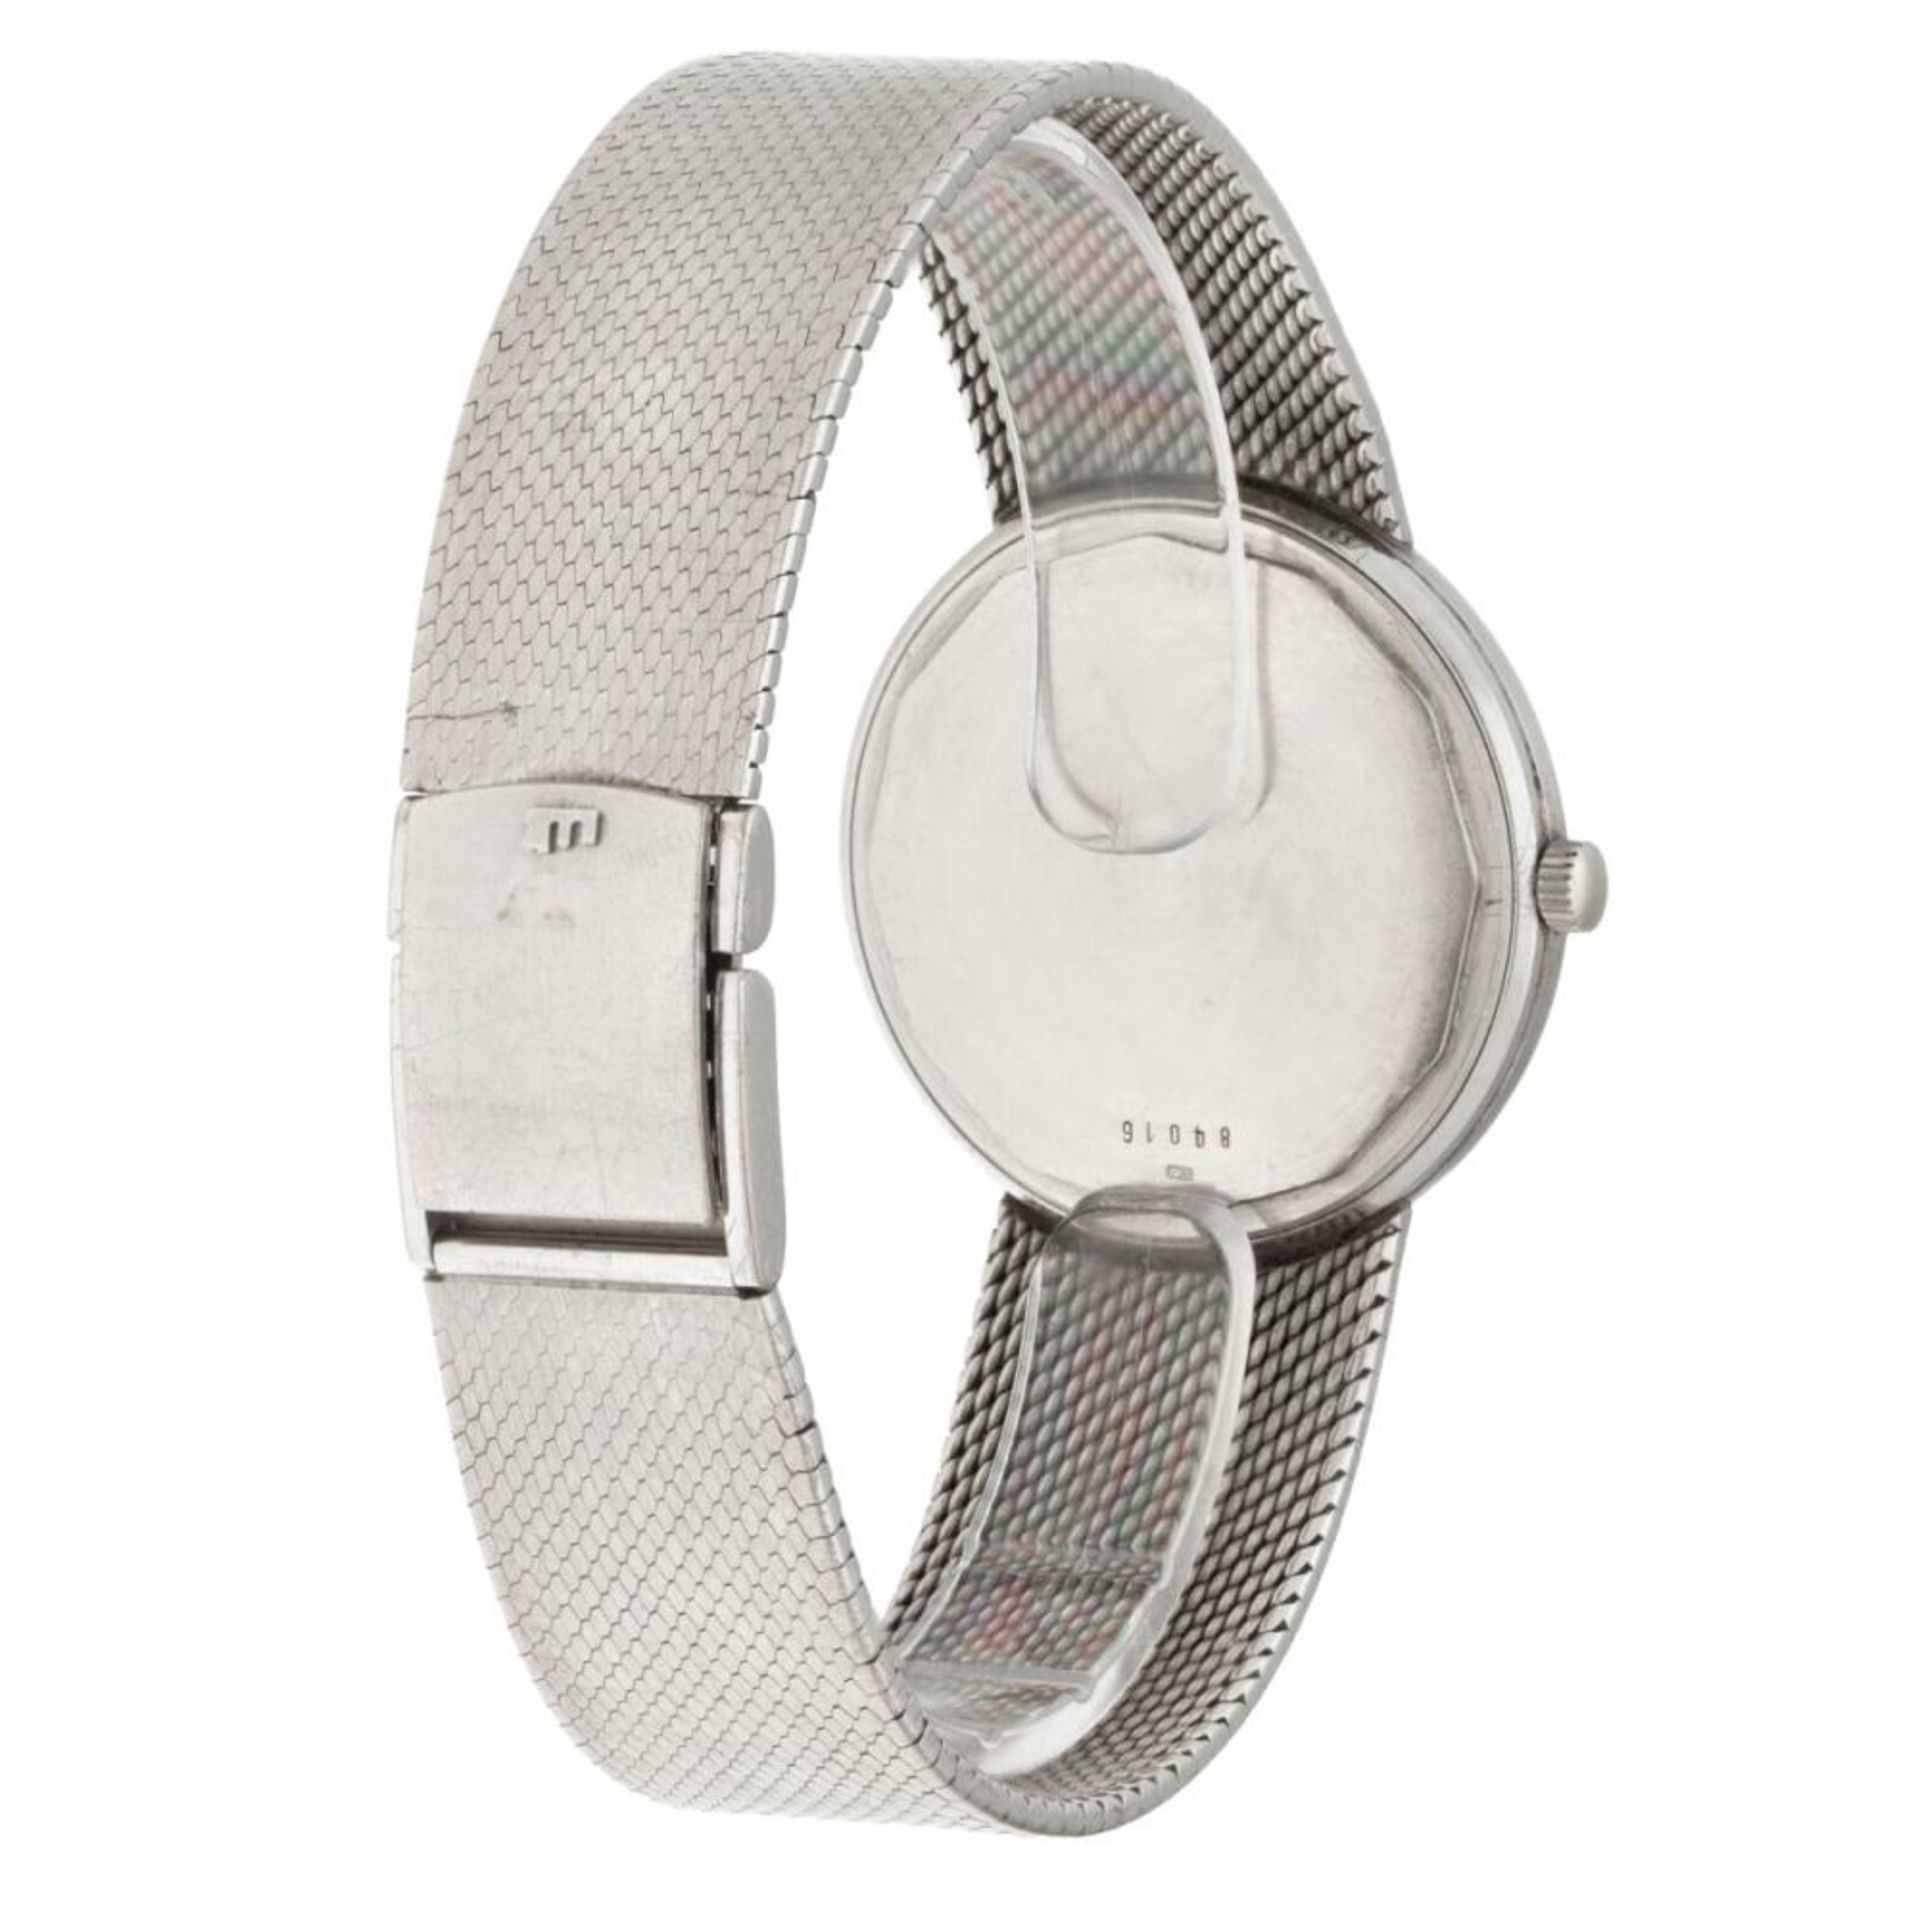 Audemars Piguet 84016 - Men's watch - approx. 1967. - Image 3 of 8